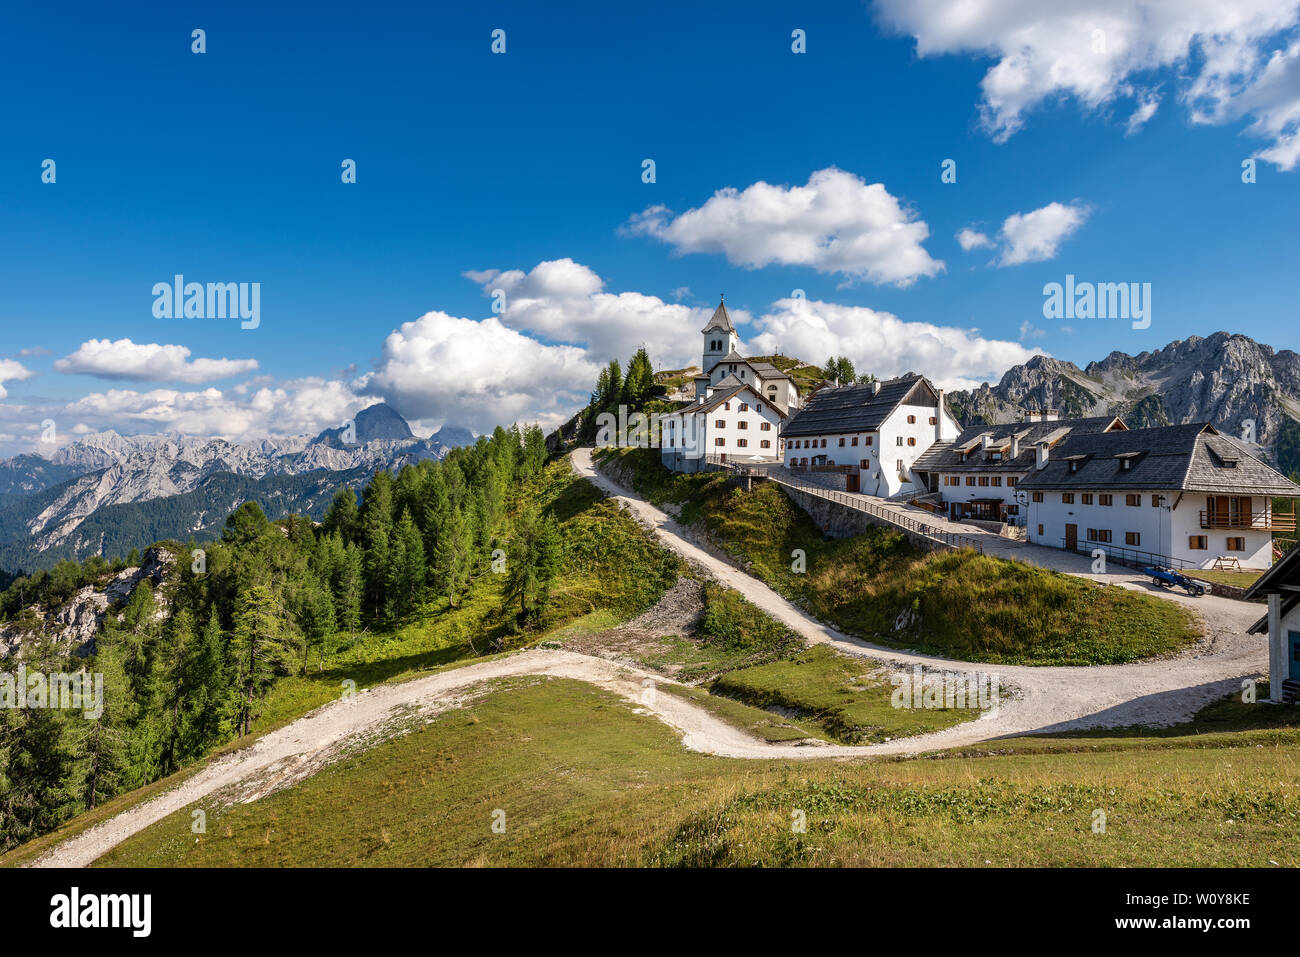 Village de Monte Santo di Lussari (1790 m) et le pic de Schloss Weikersdorf (2677 m.) dans les Alpes juliennes. Tarvisio, Friuli Venezia Giulia, Italie, Europe Banque D'Images